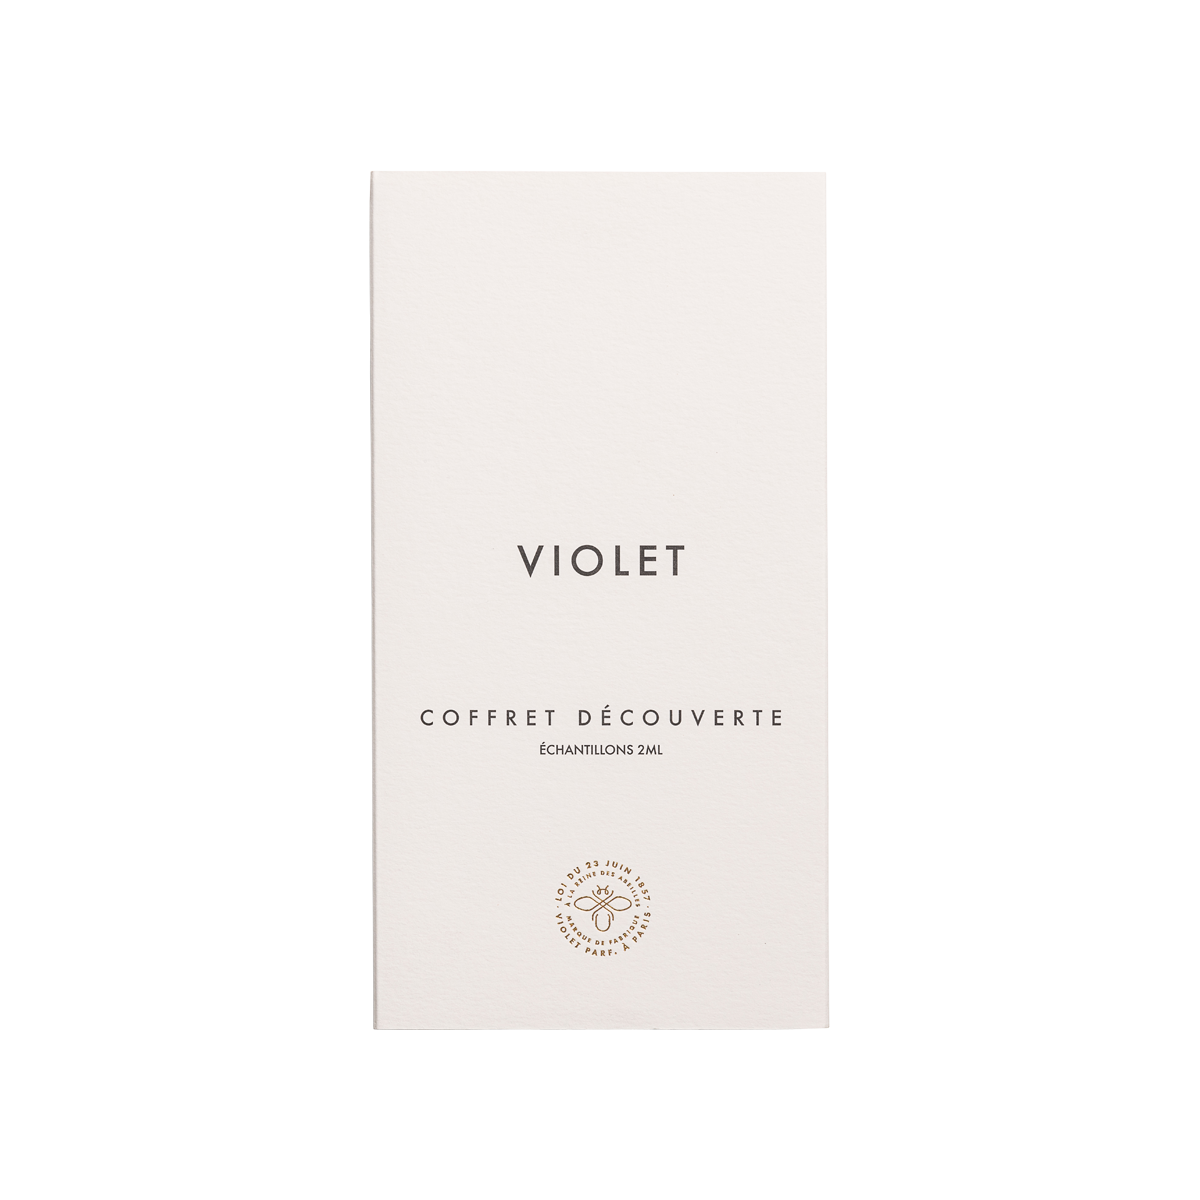 Violet - Samples of the Heritage range